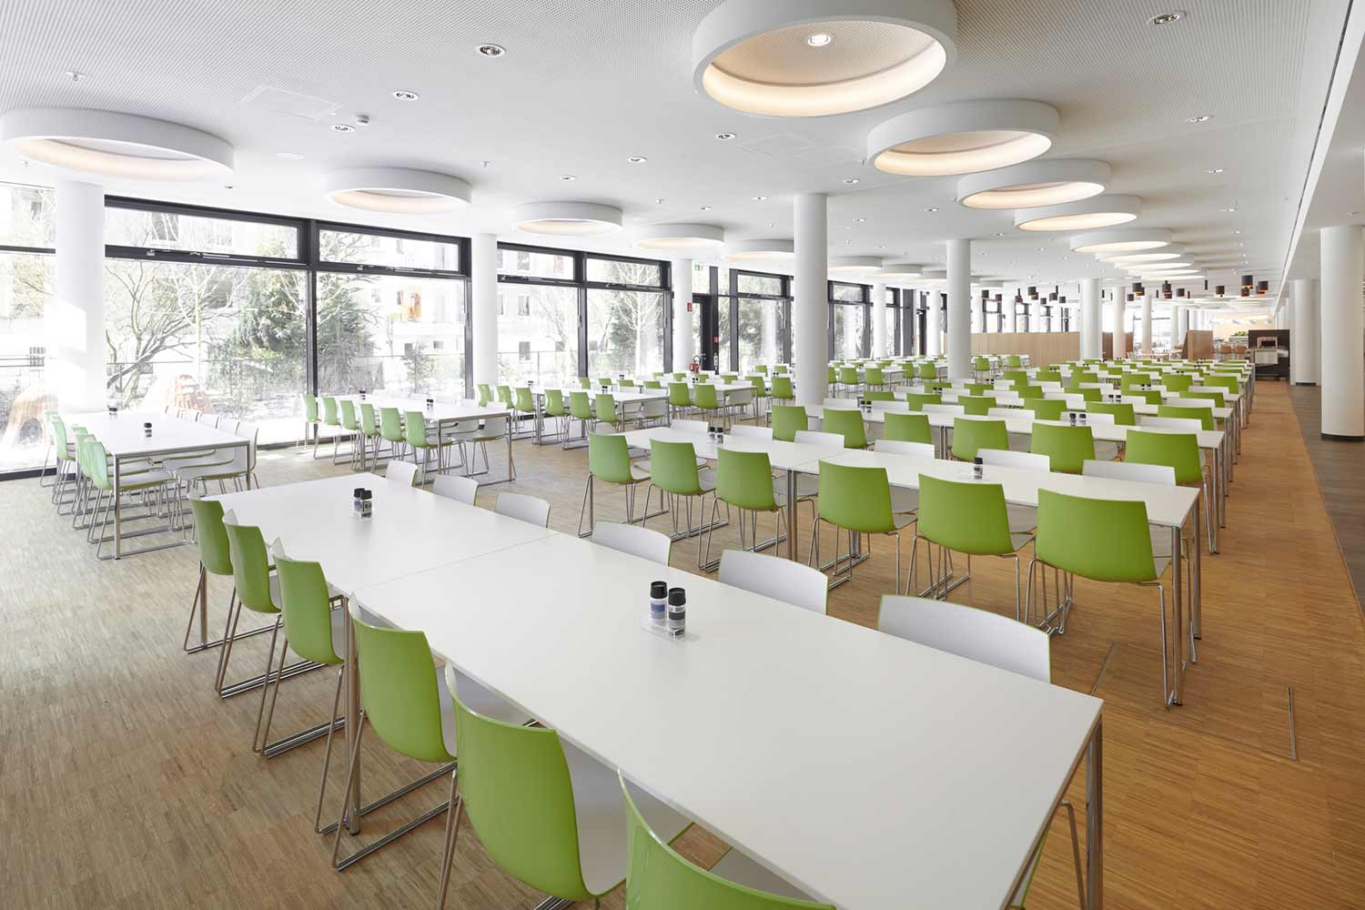 Architekturfotografie Lioba Schneider: Neubau des Vodafone-Campus in Düsseldorf. Große Kantine mit unterschiedlicher Bestuhlung und Beleuchtung, wodurch verschiedene Zonen entstehen.